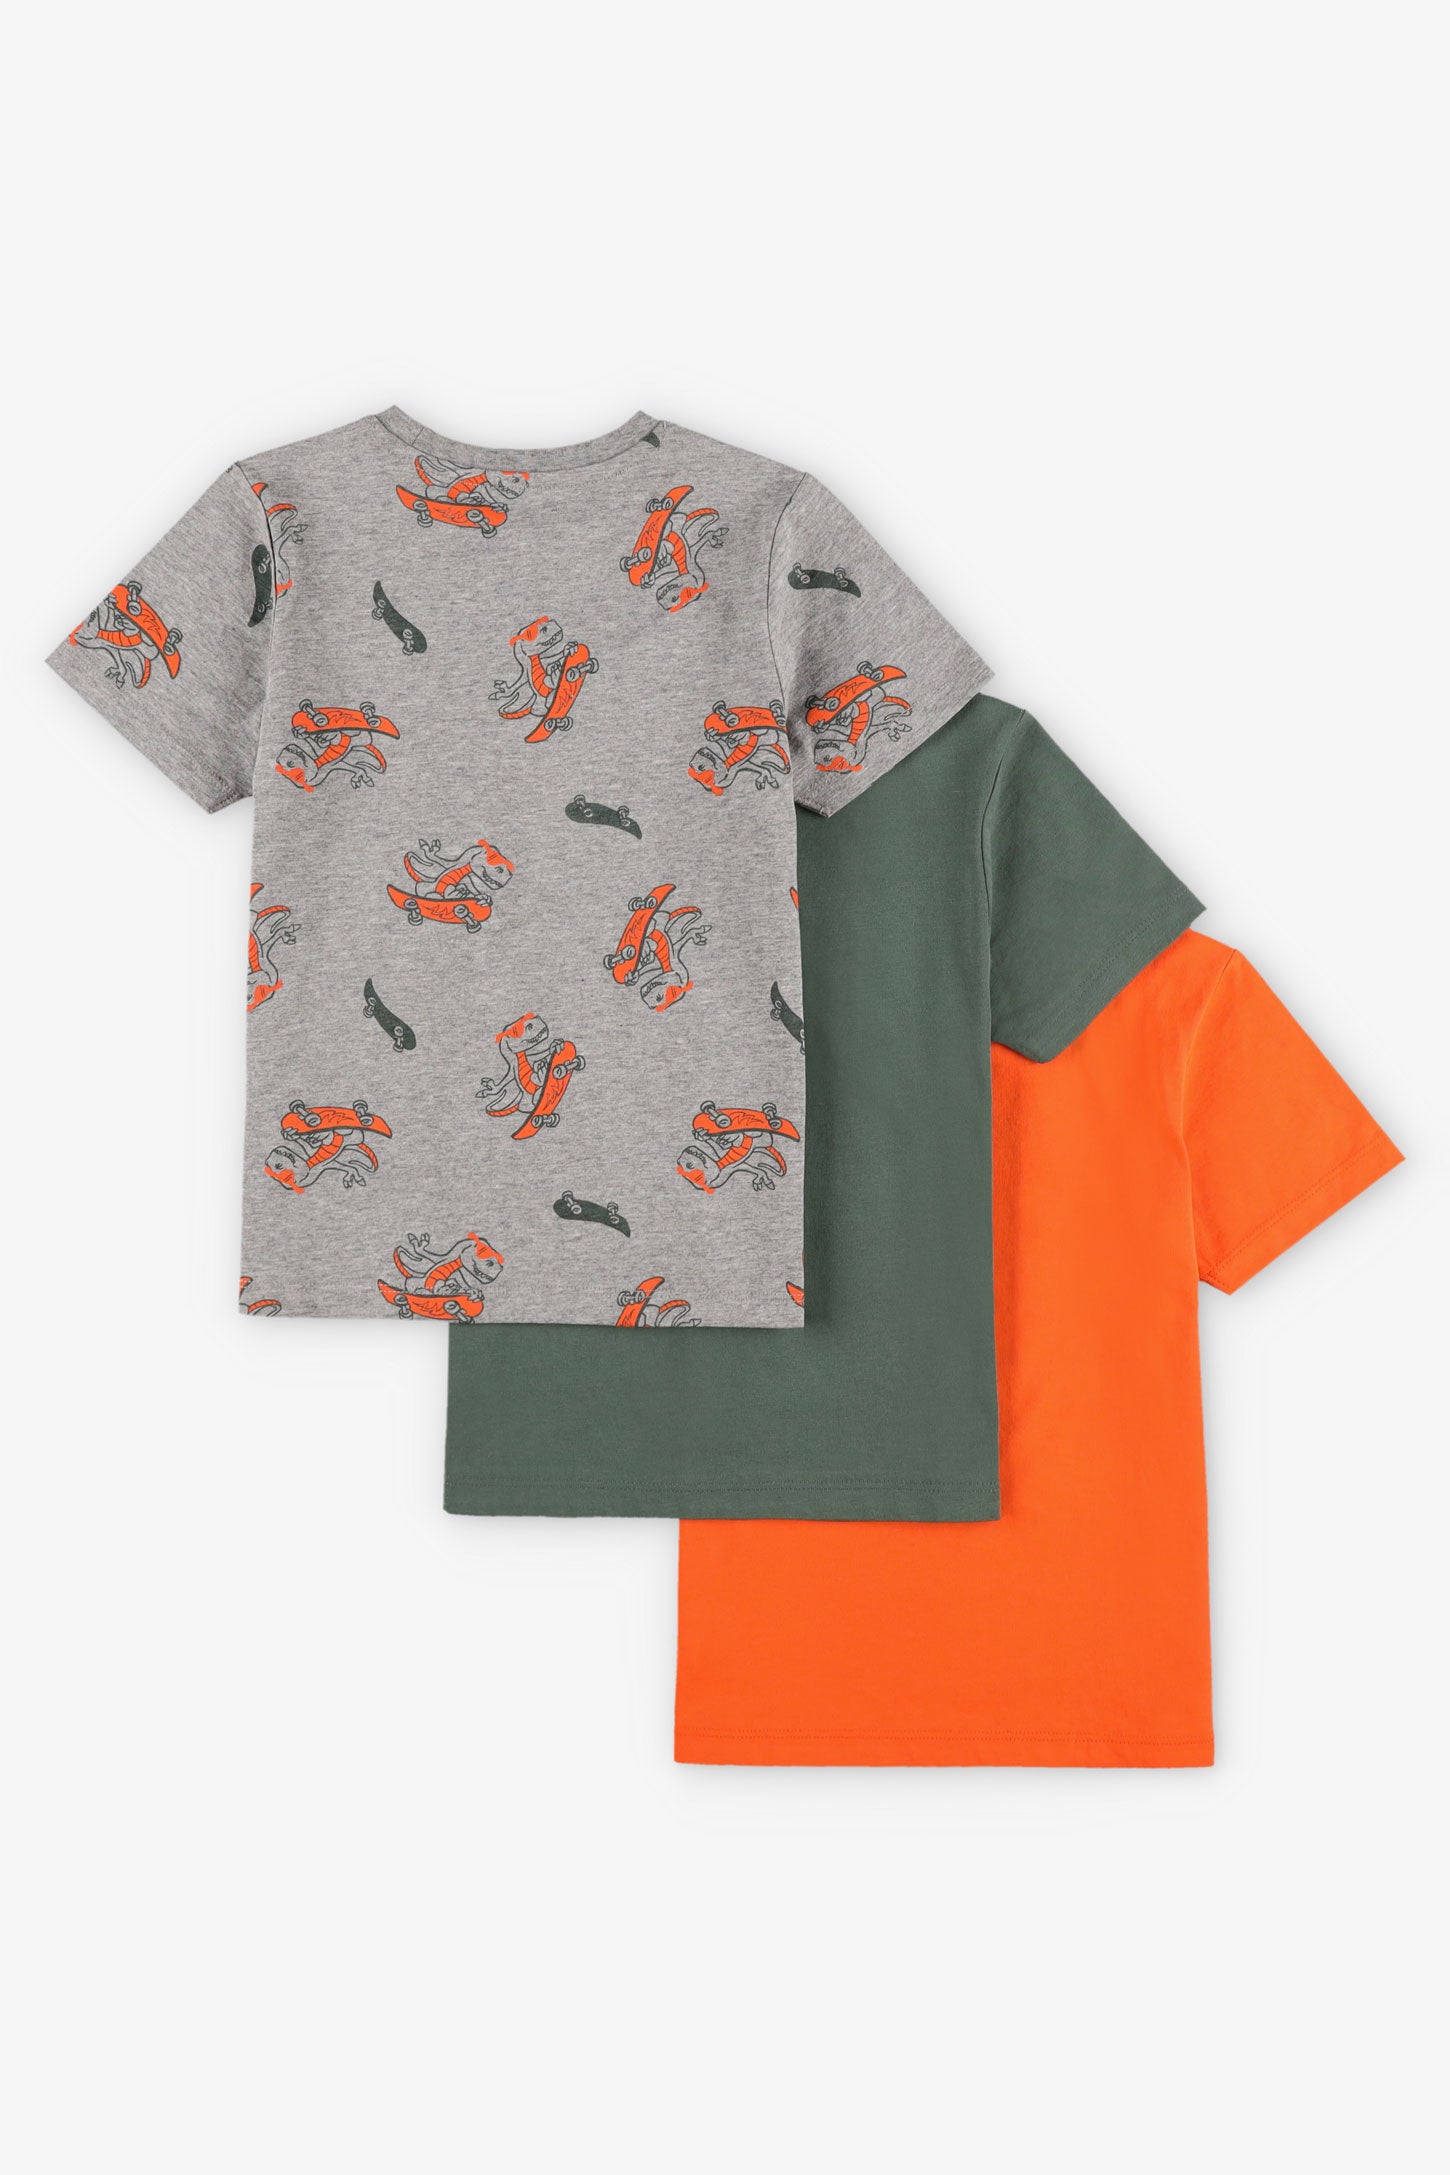 Lot de 3 t-shirts en coton - Enfant garçon && GRIS MULTI